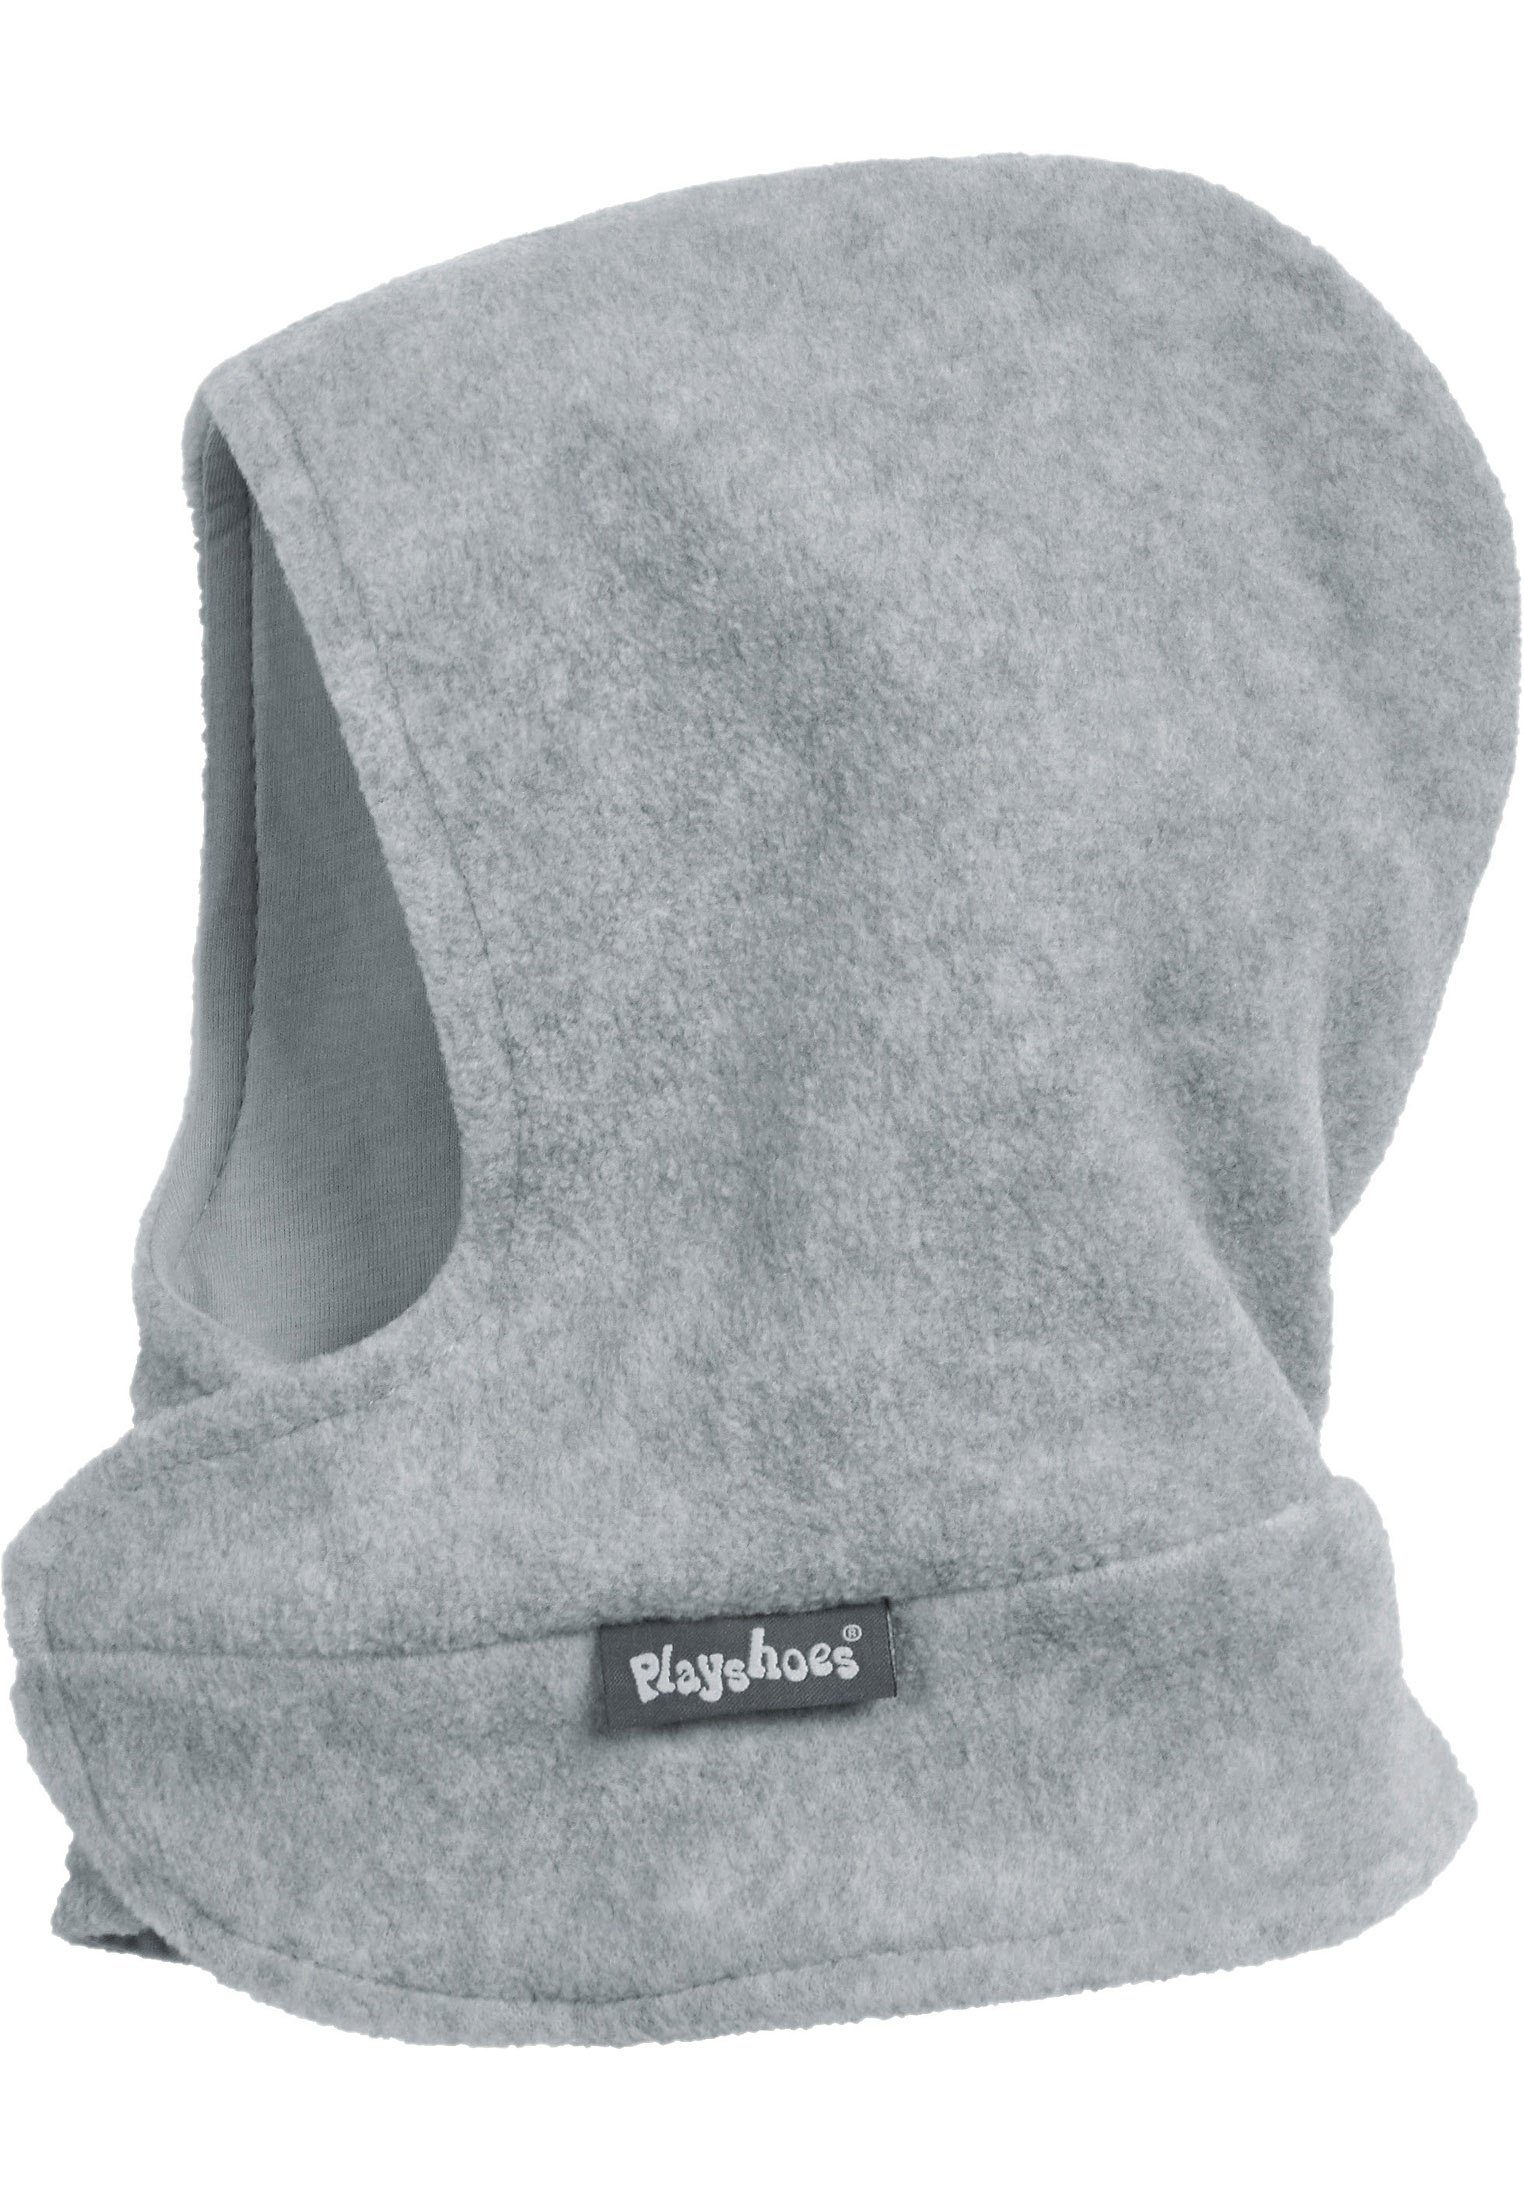 Playshoes Schlupfmütze Fleece-Schalmütze mit Klettverschluß grau/melange